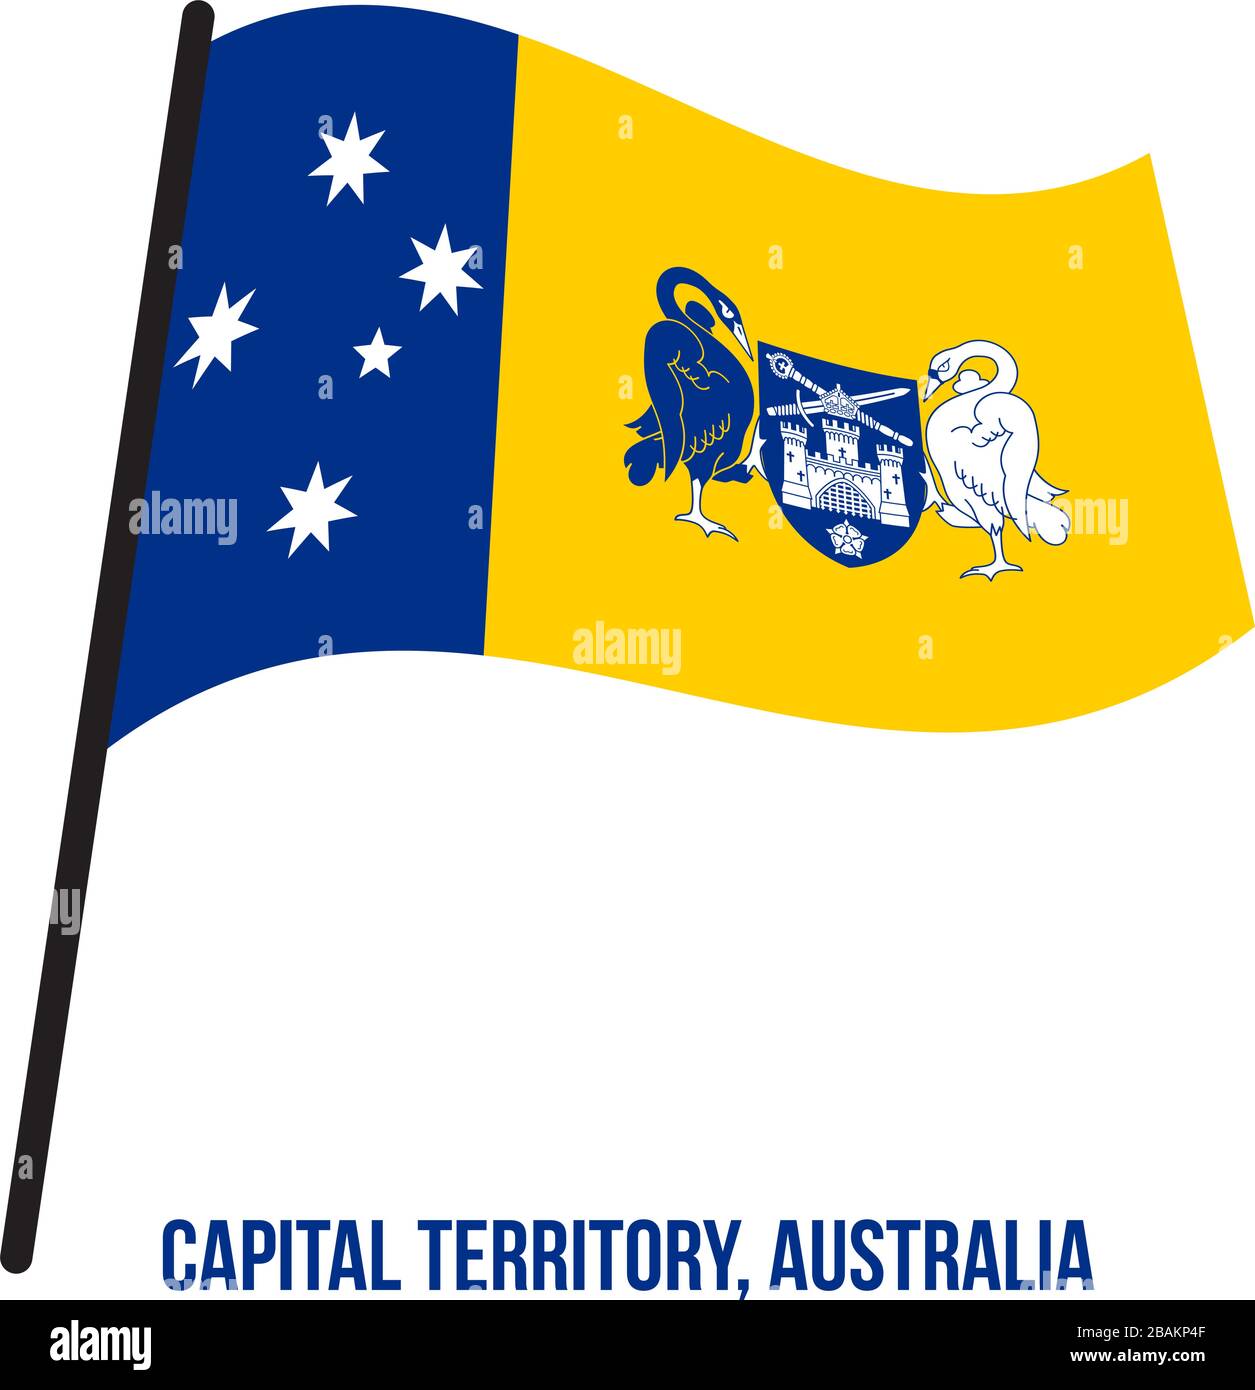 Territoire de la capitale australienne (ACT) Drapeaux Vector Illustration sur fond blanc. Drapeau du territoire de l'Australie. Illustration de Vecteur